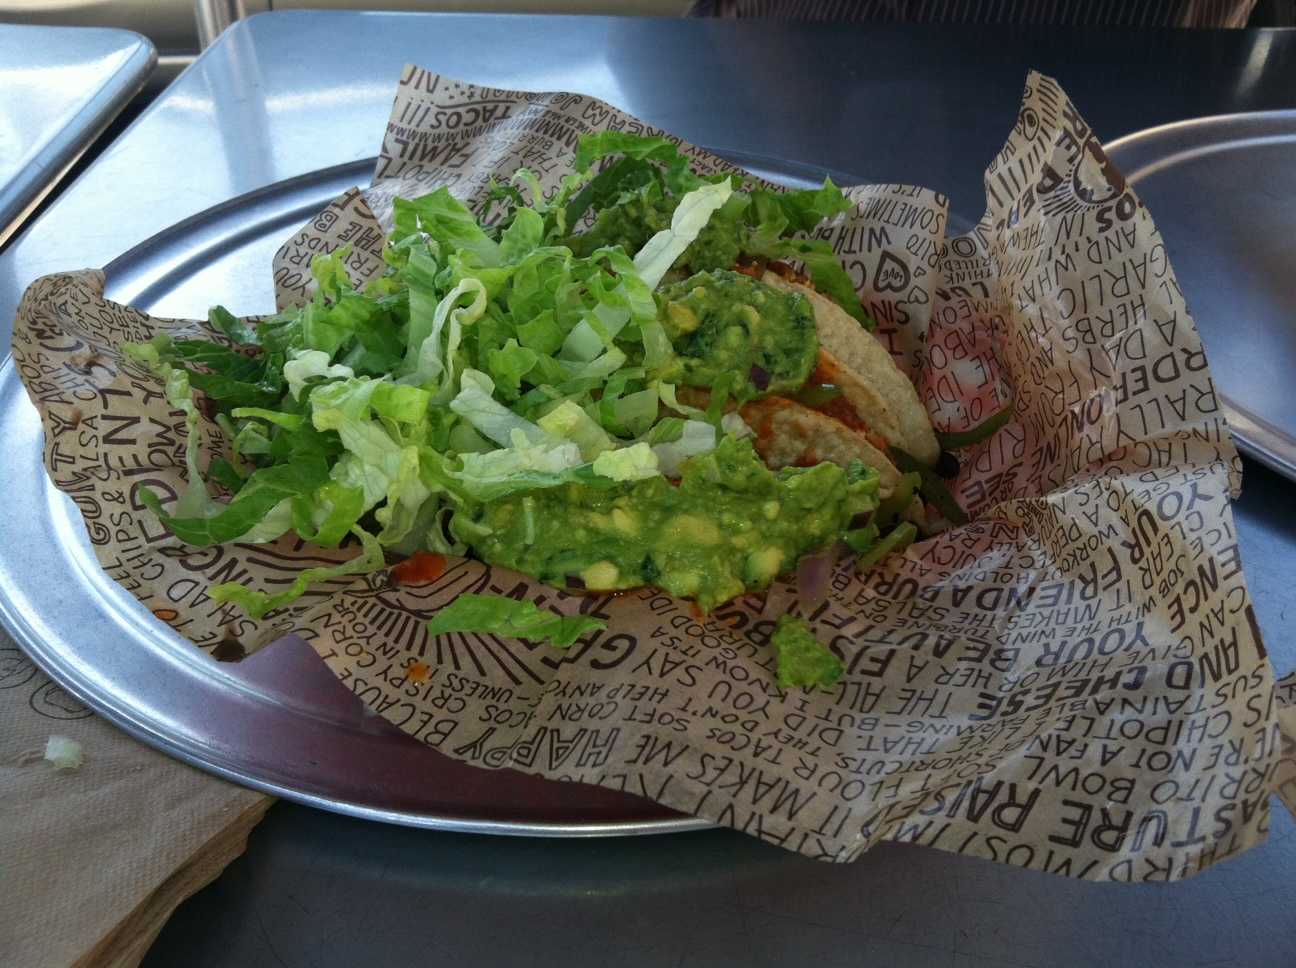 Three tacos hiding under guacamole